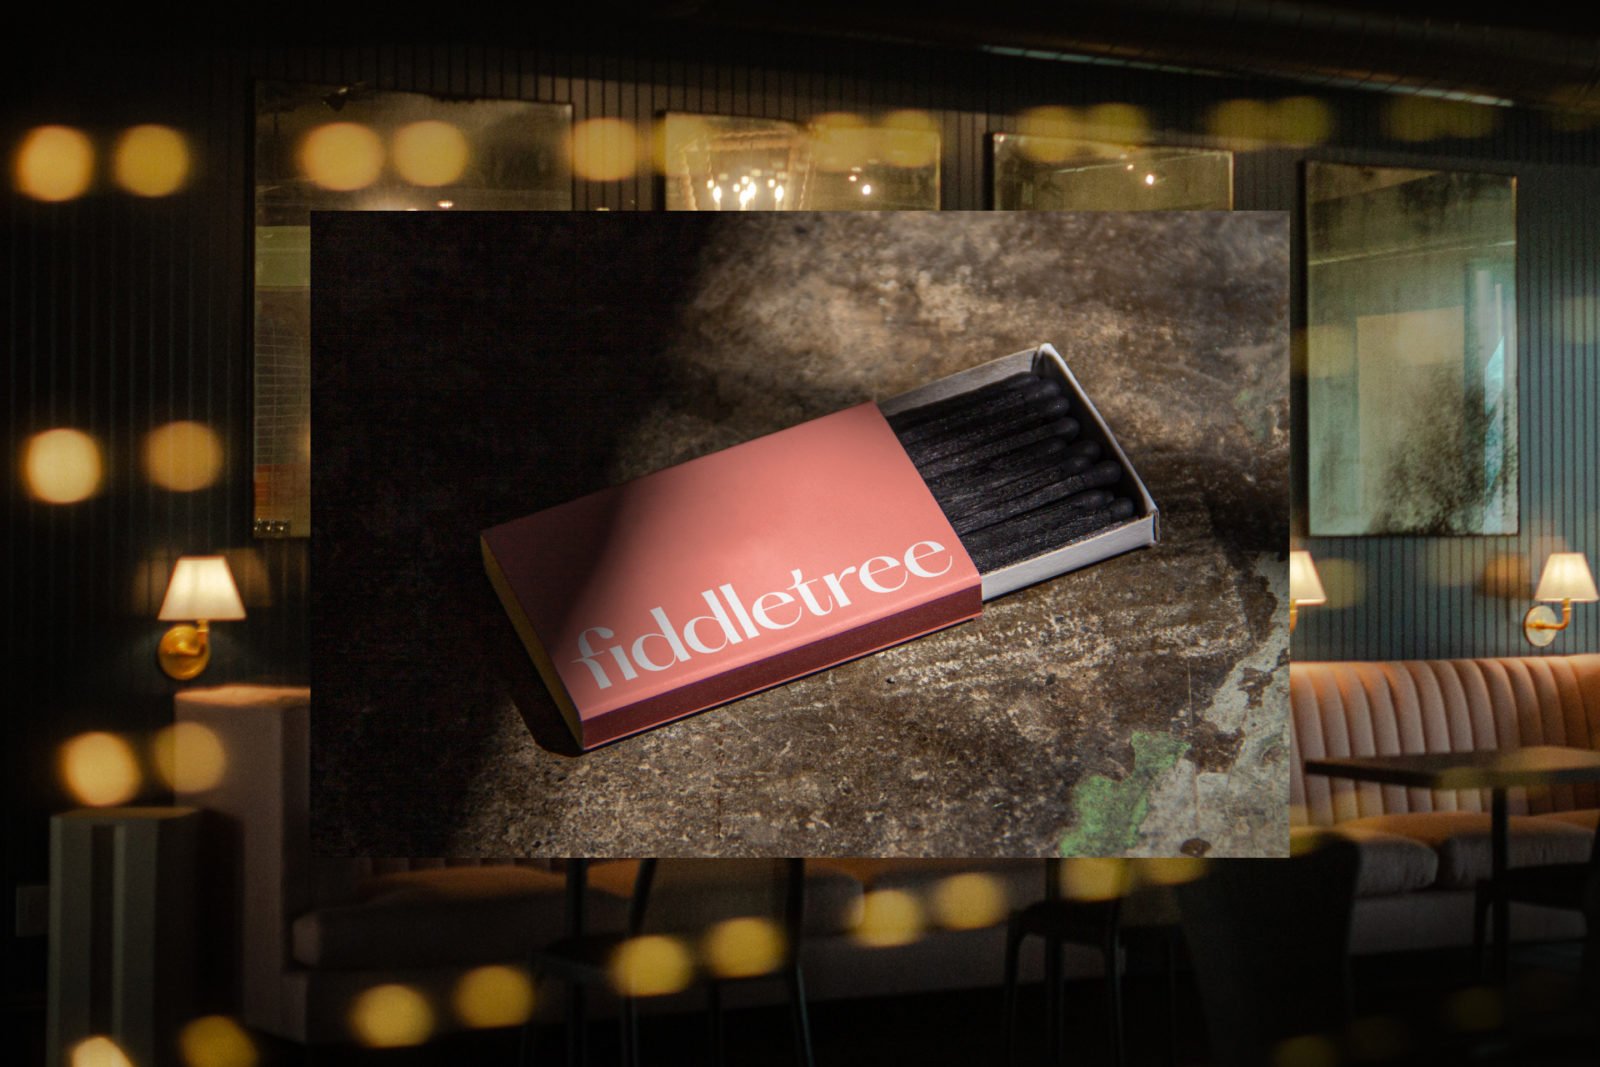 Fiddletree Restaurant and Bar Matches Design